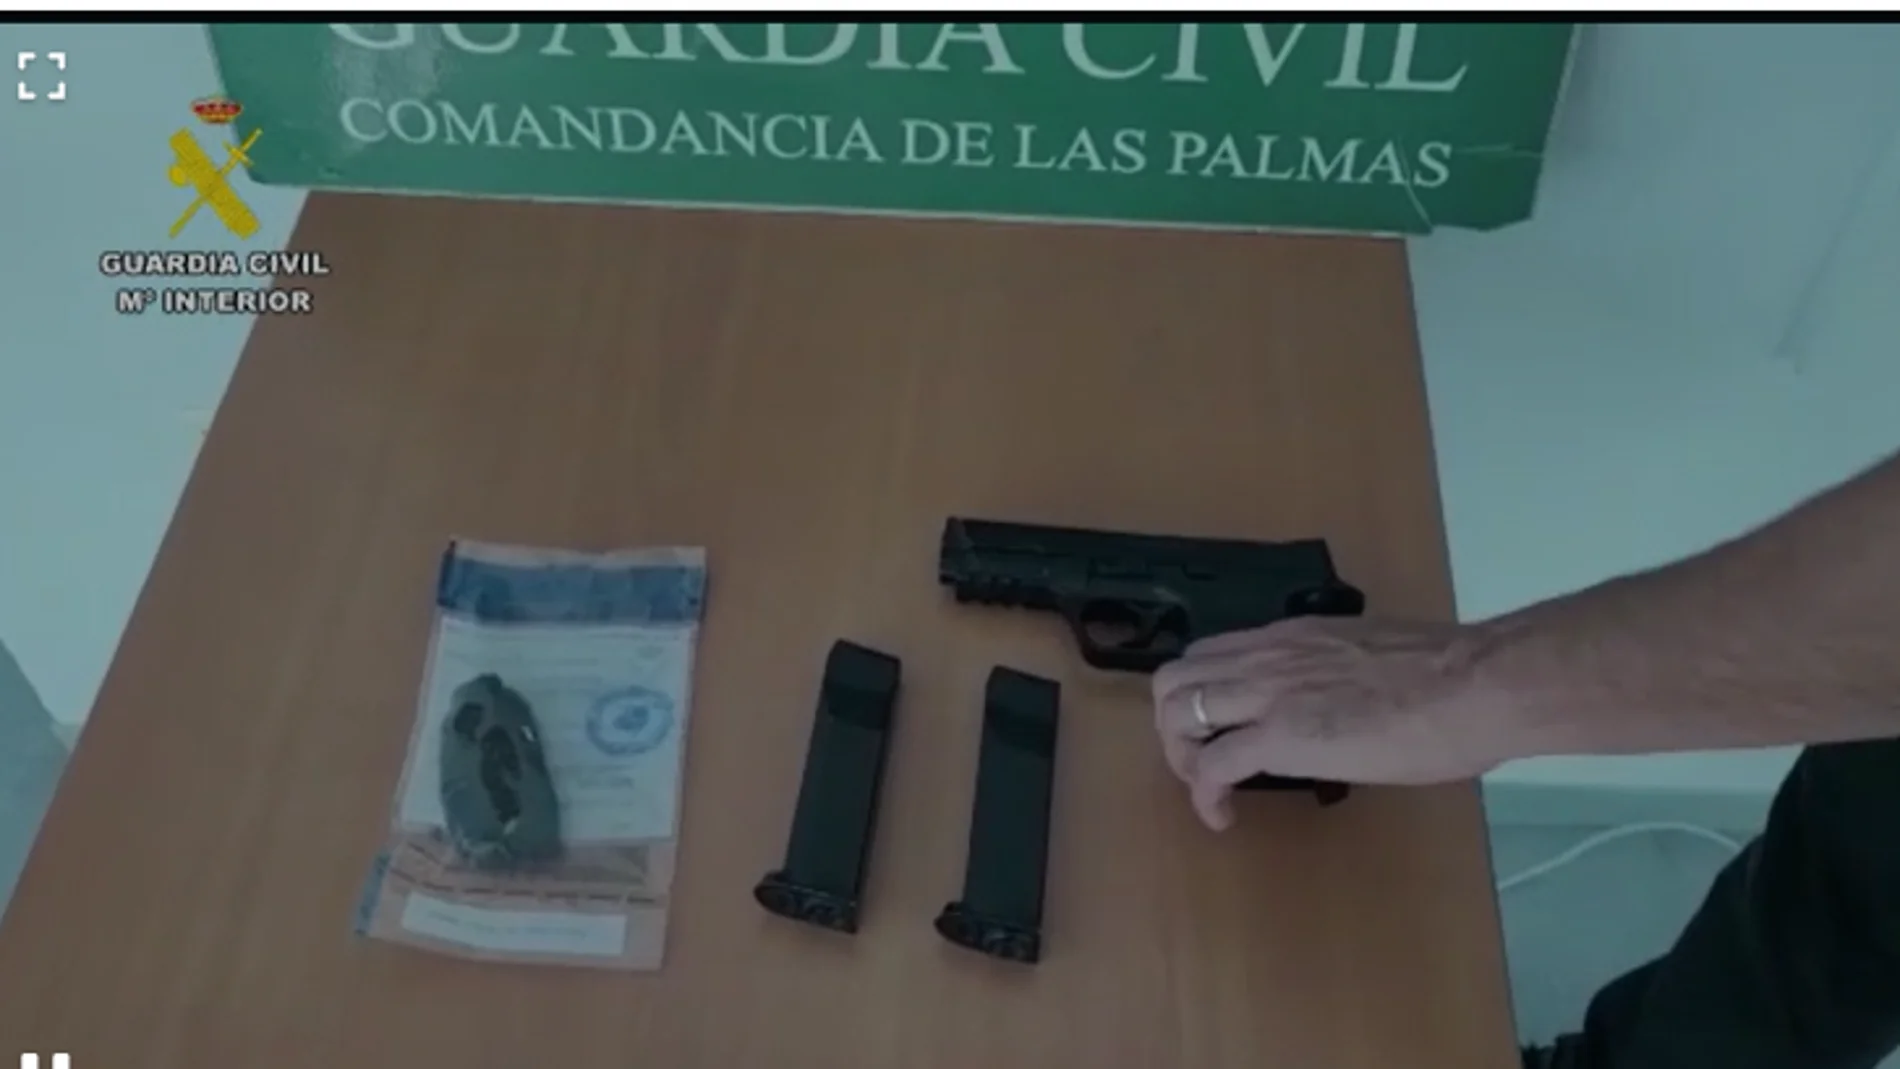 El arma y los cargadores encontrados por la Guardia Civil